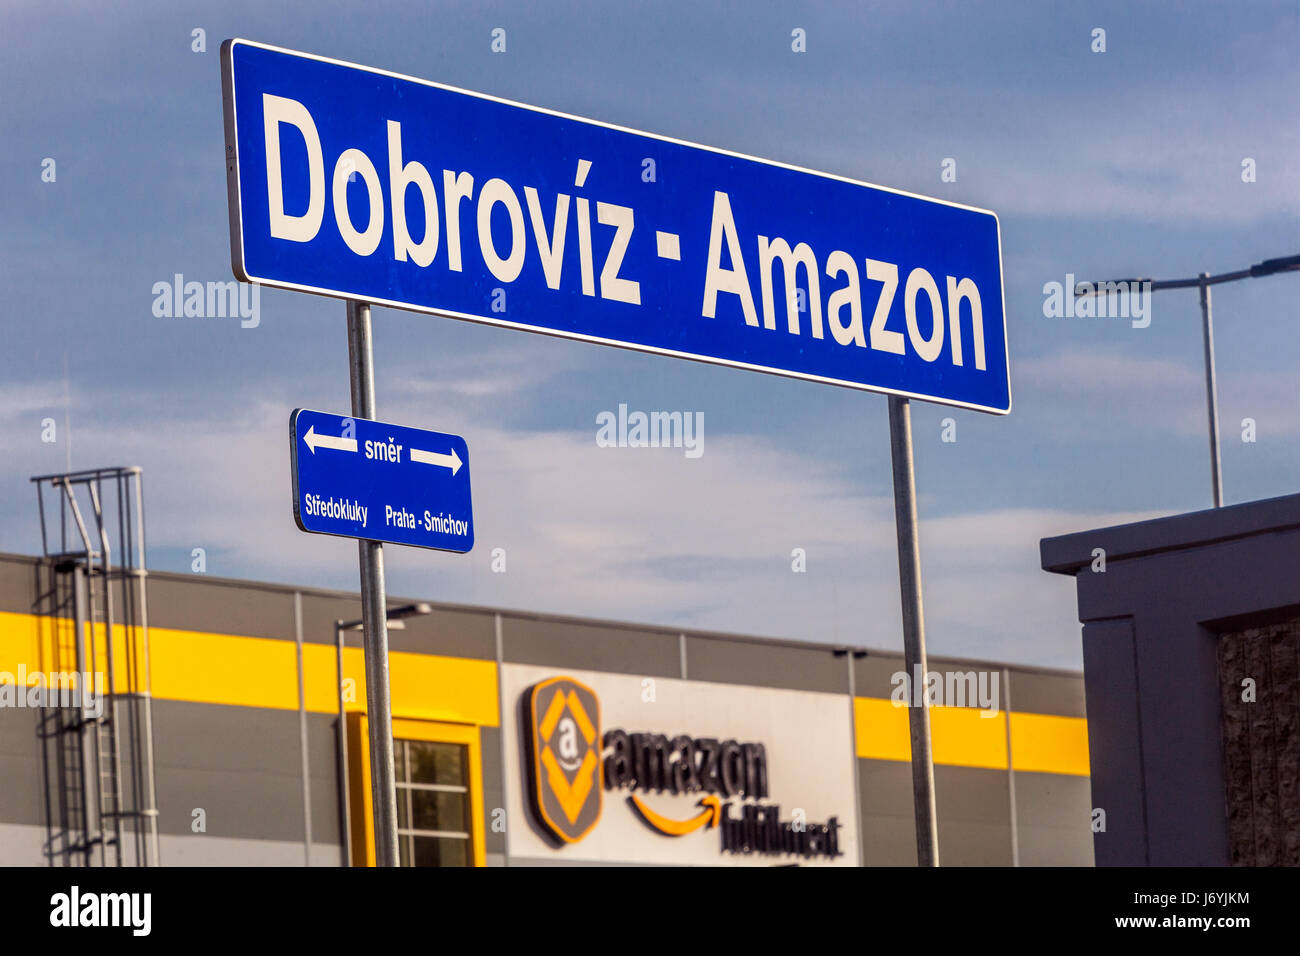 Estación de Ferrocarril, Dobroviz - Amazon. Empresa minorista en línea.  Logística de cumplimentación de los edificios. Dobrovíz, República Checa,  Europa Fotografía de stock - Alamy